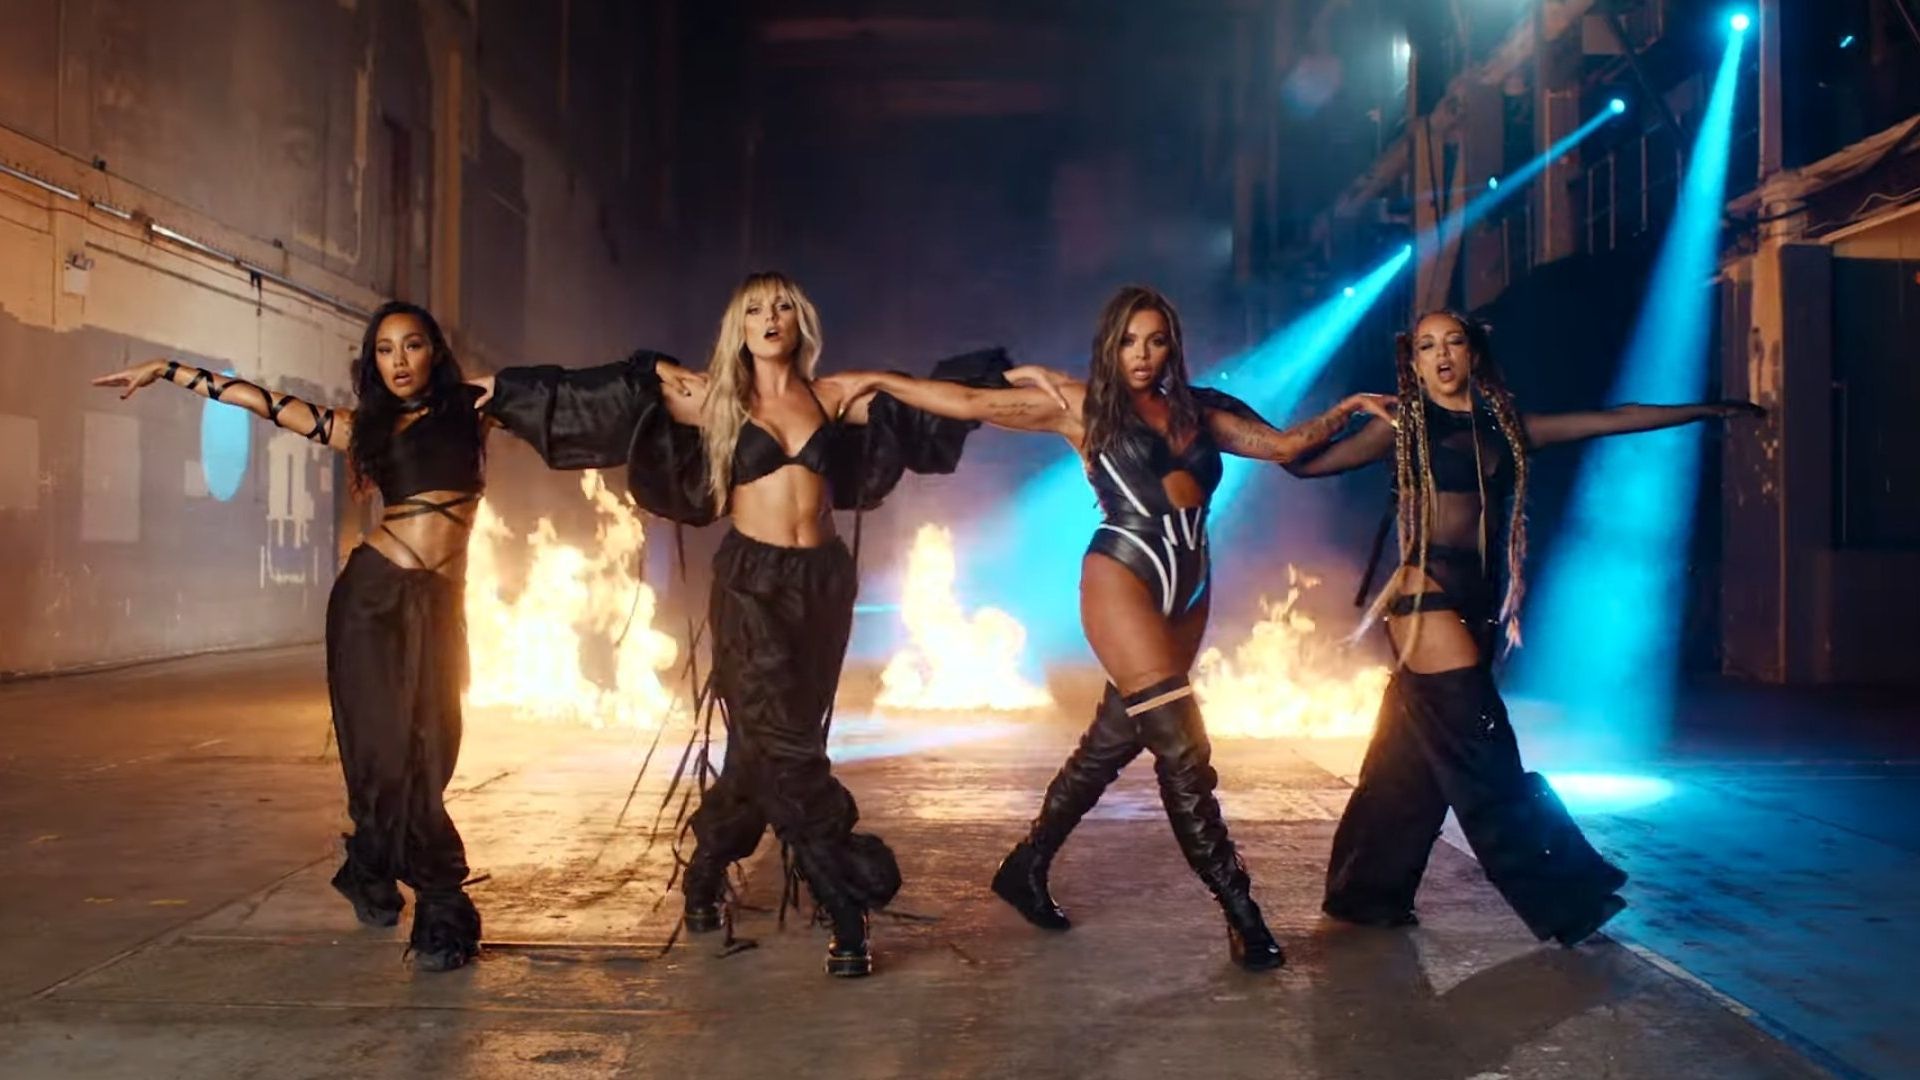 Com surra de coreografia e muito poder, Little Mix nos deixa sem fôlego no clipe de “Sweet Melody”